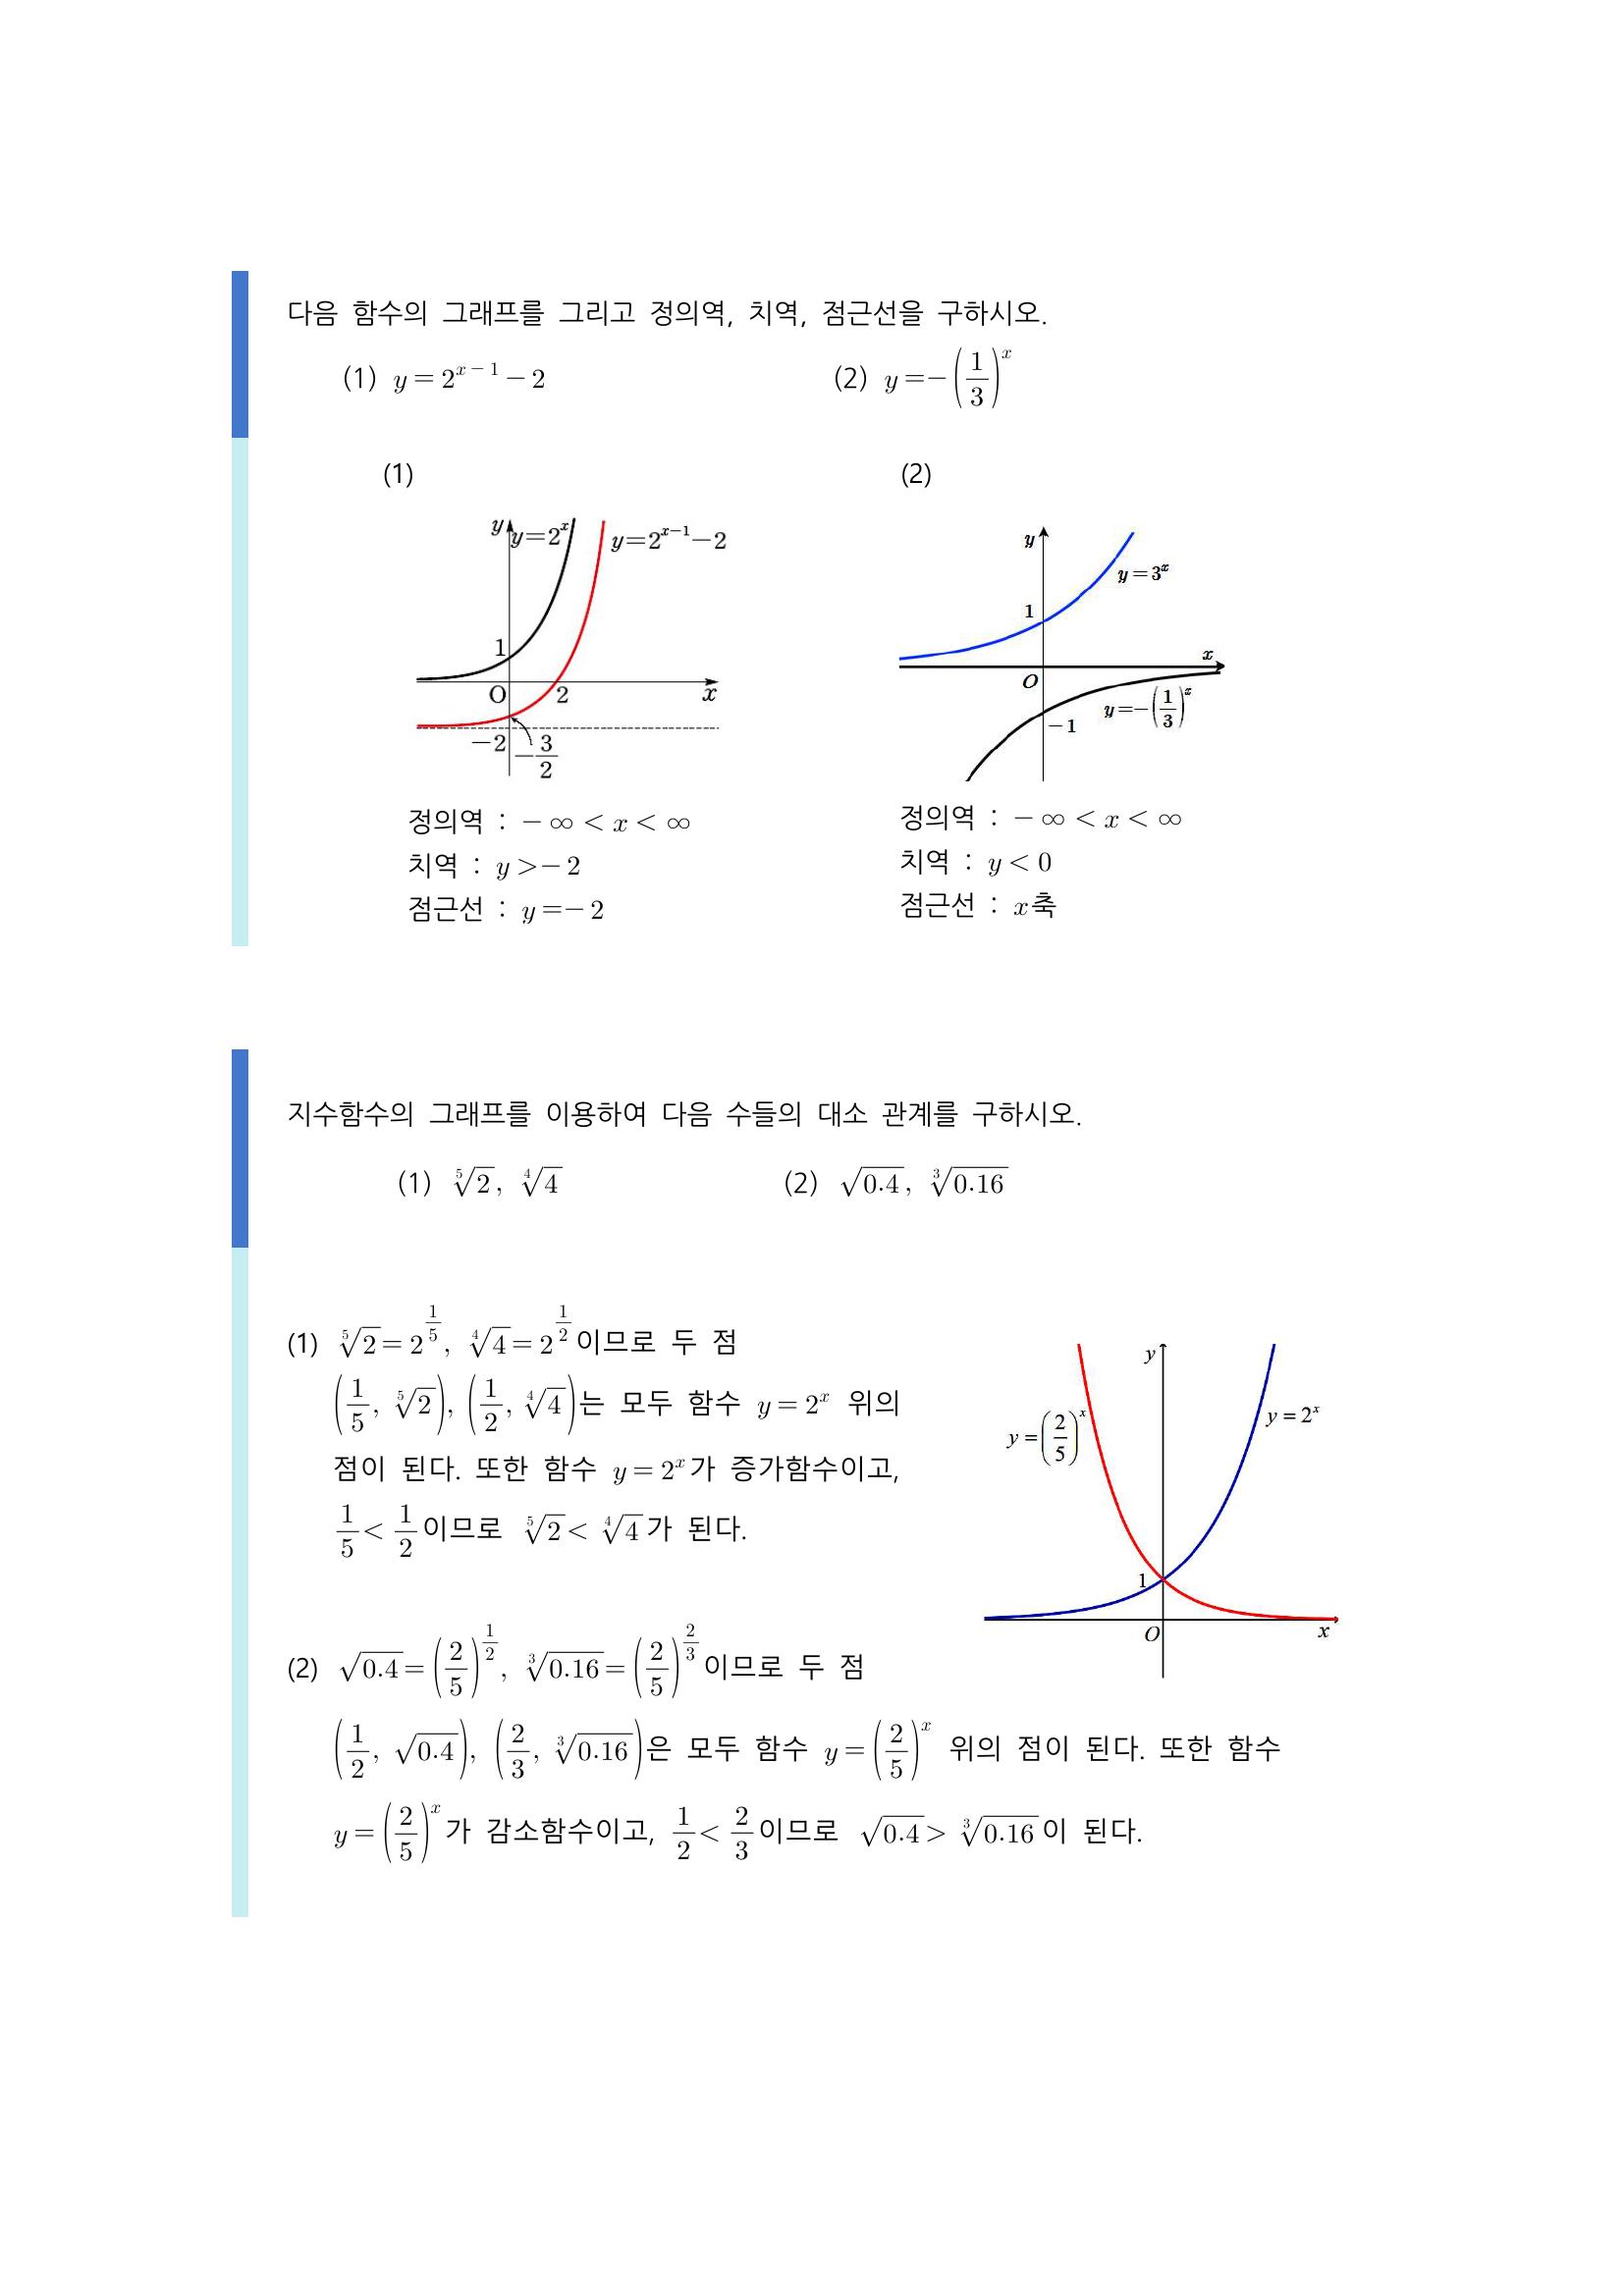 수학 개념 정리/공식 : 지수함수, 로그함수, 지수함수의 그래프, 로그함수의 그래프